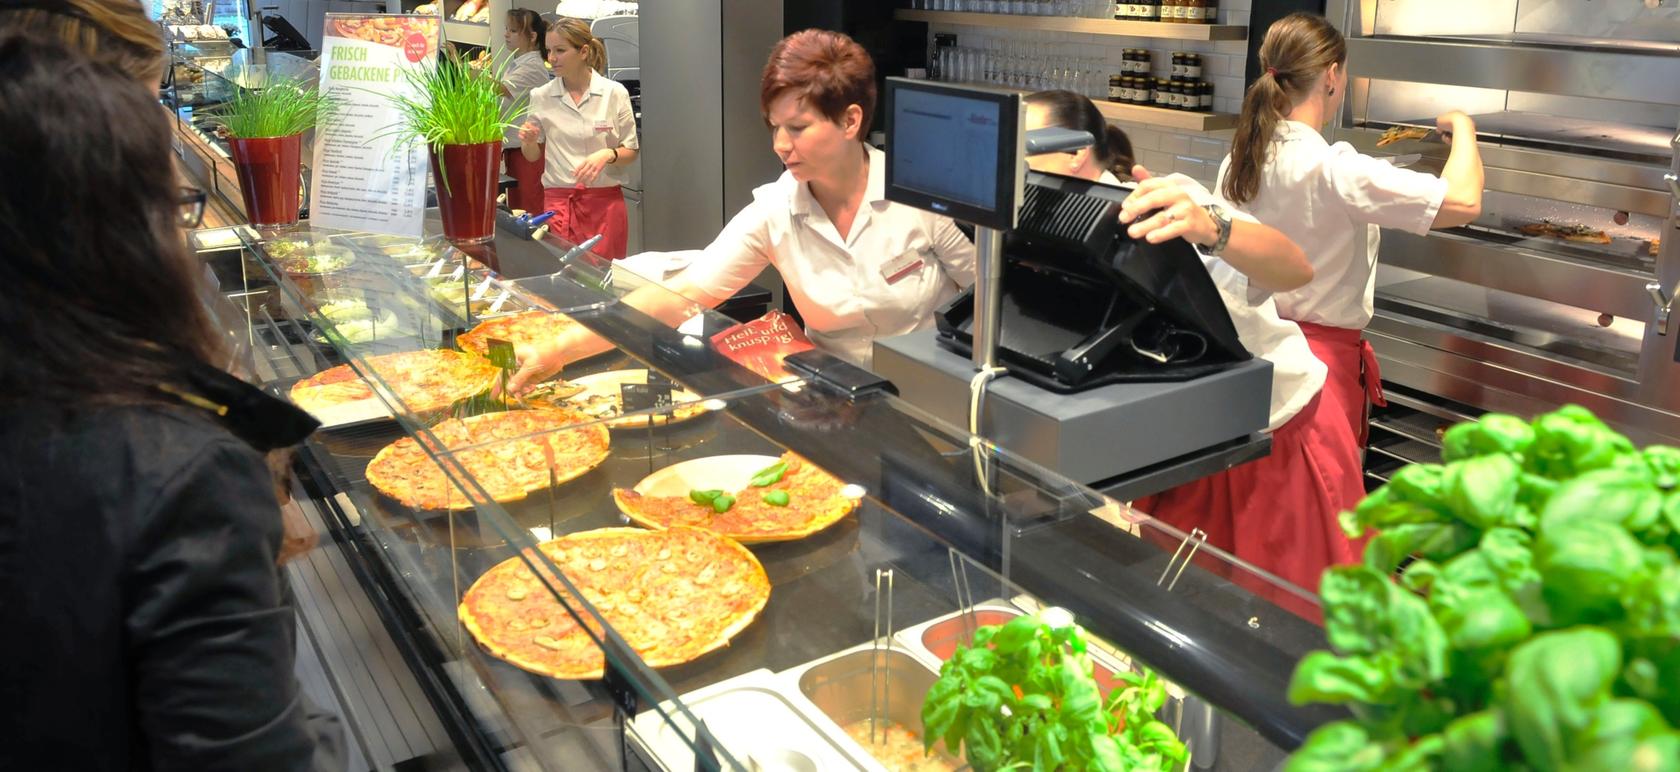 Der Teig kommt aus dem Großbetrieb in Tennenlohe, aber die Pizzen werden frisch vor Ort gebacken.